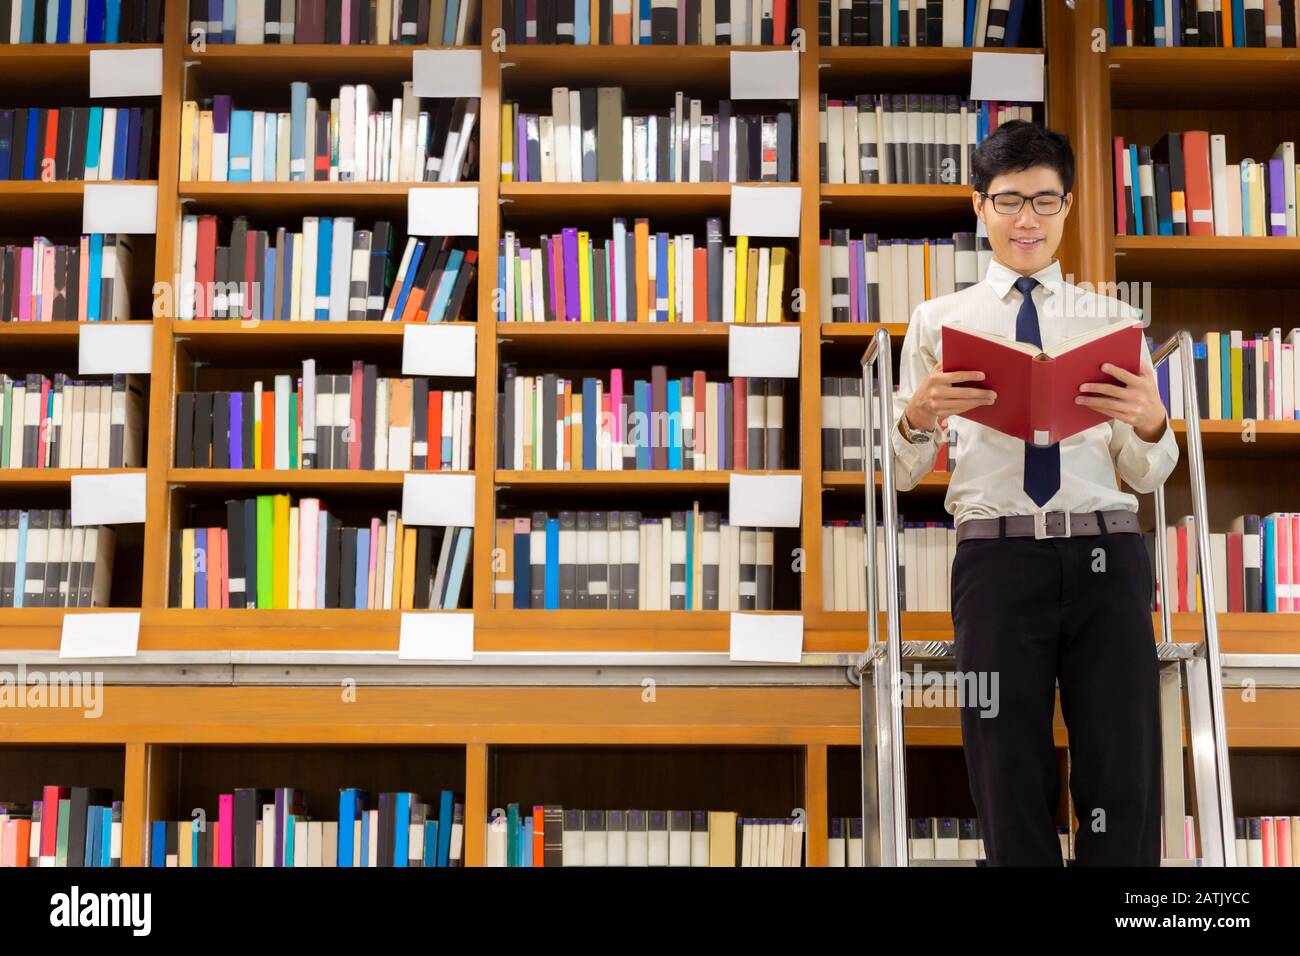 Il bibliotecario professore si alza sulle scale per cercare la conoscenza, leggendo il libro nella biblioteca. Foto Stock